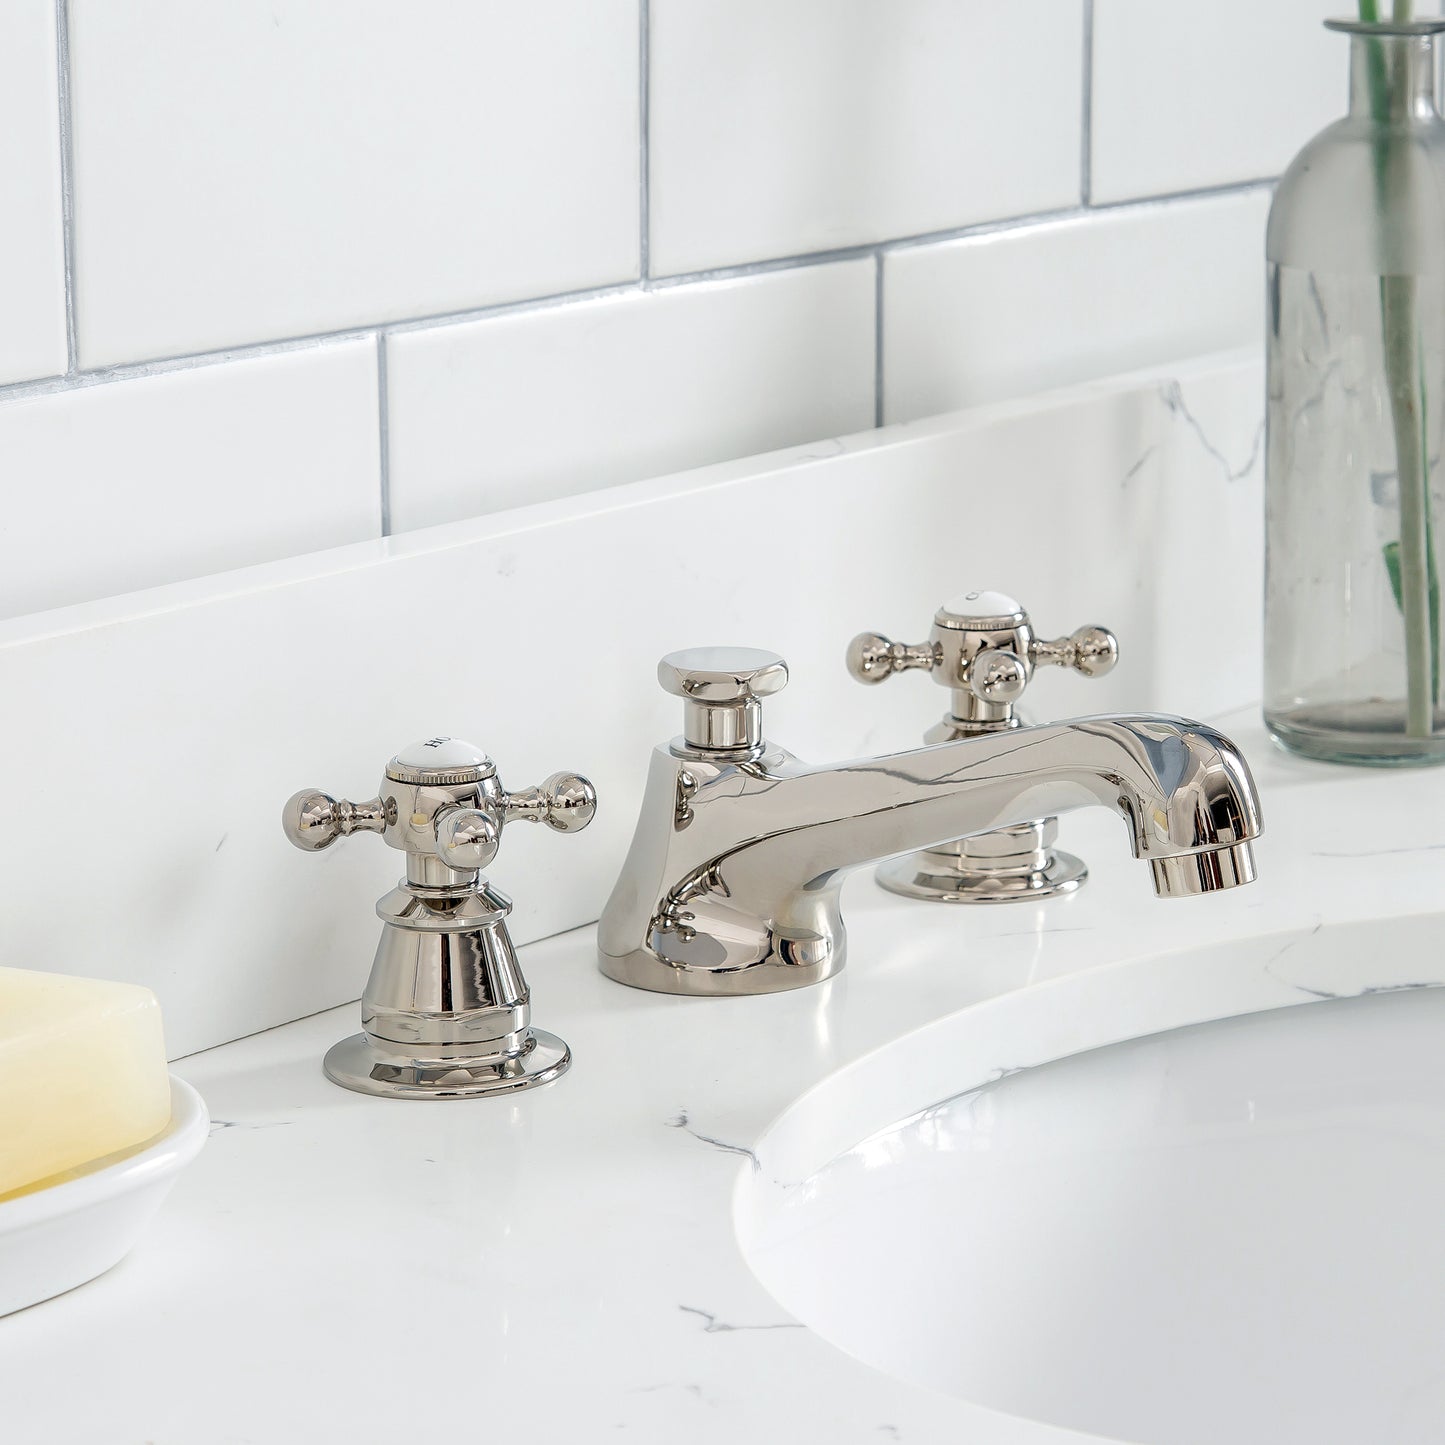 Water Creation Queen 30" Inch Single Sink Quartz Carrara Vanity with Lavatory Faucet - Luxe Bathroom Vanities